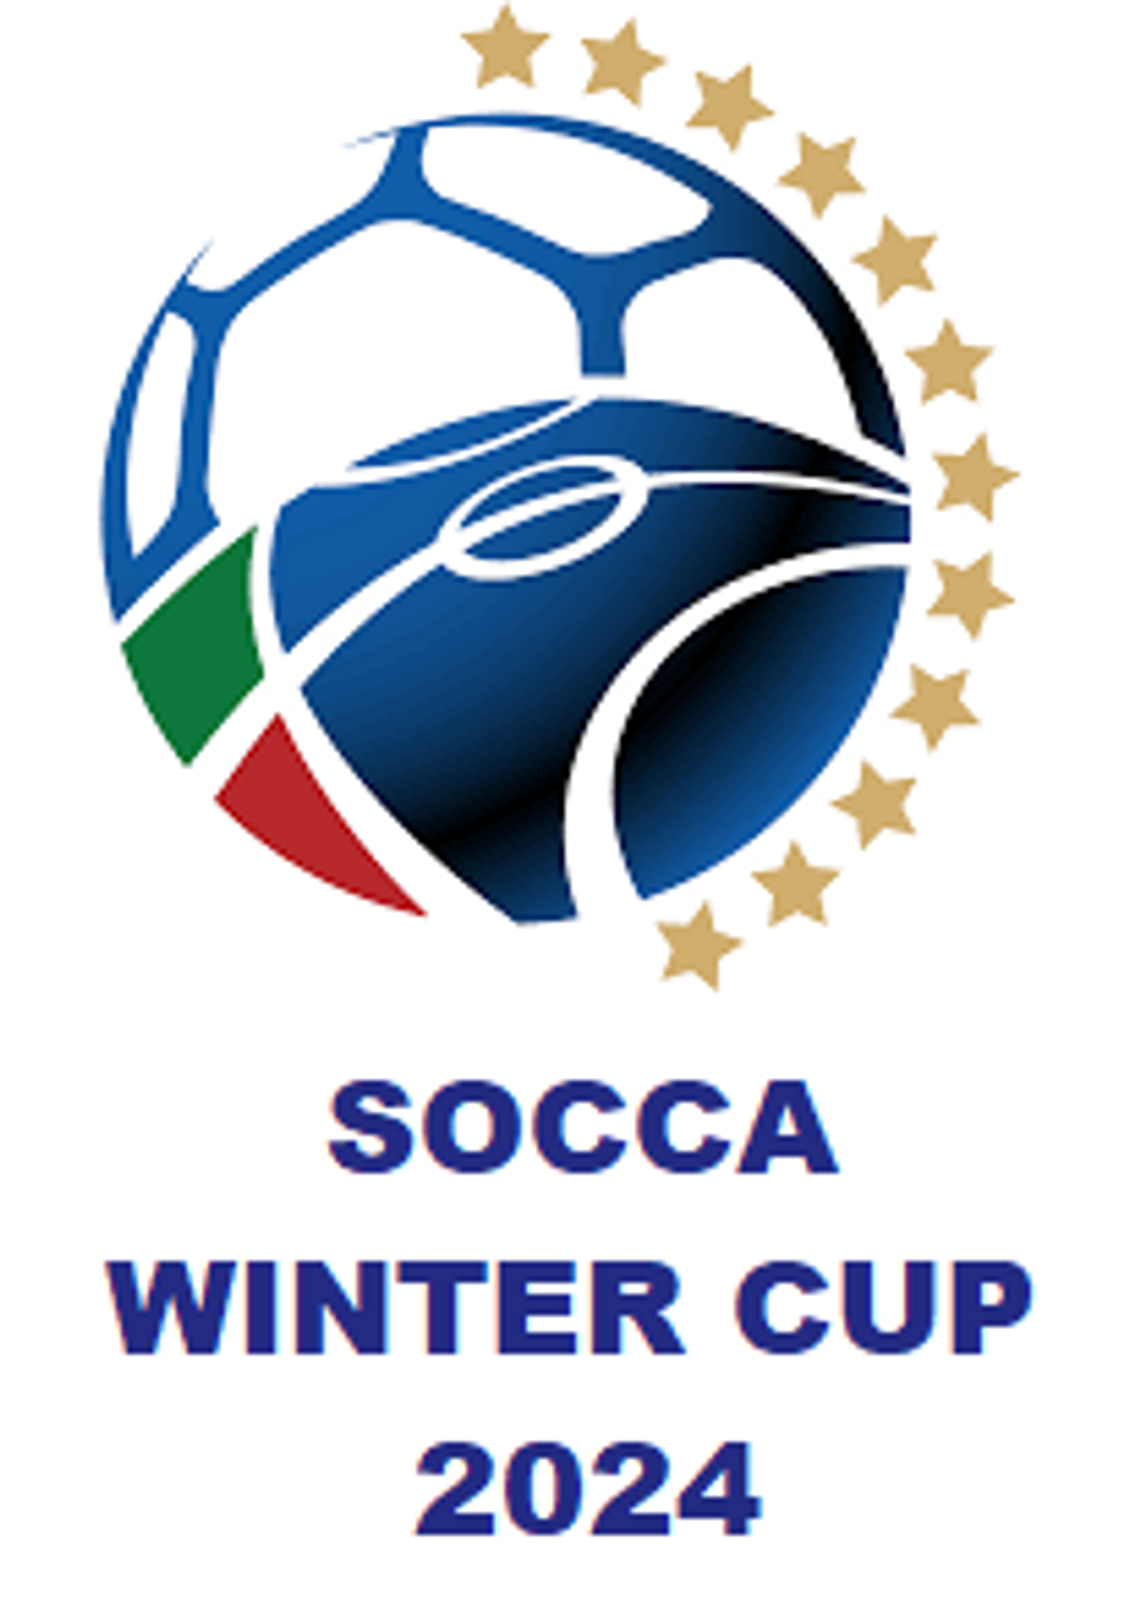 Socca Winter Cup 2024